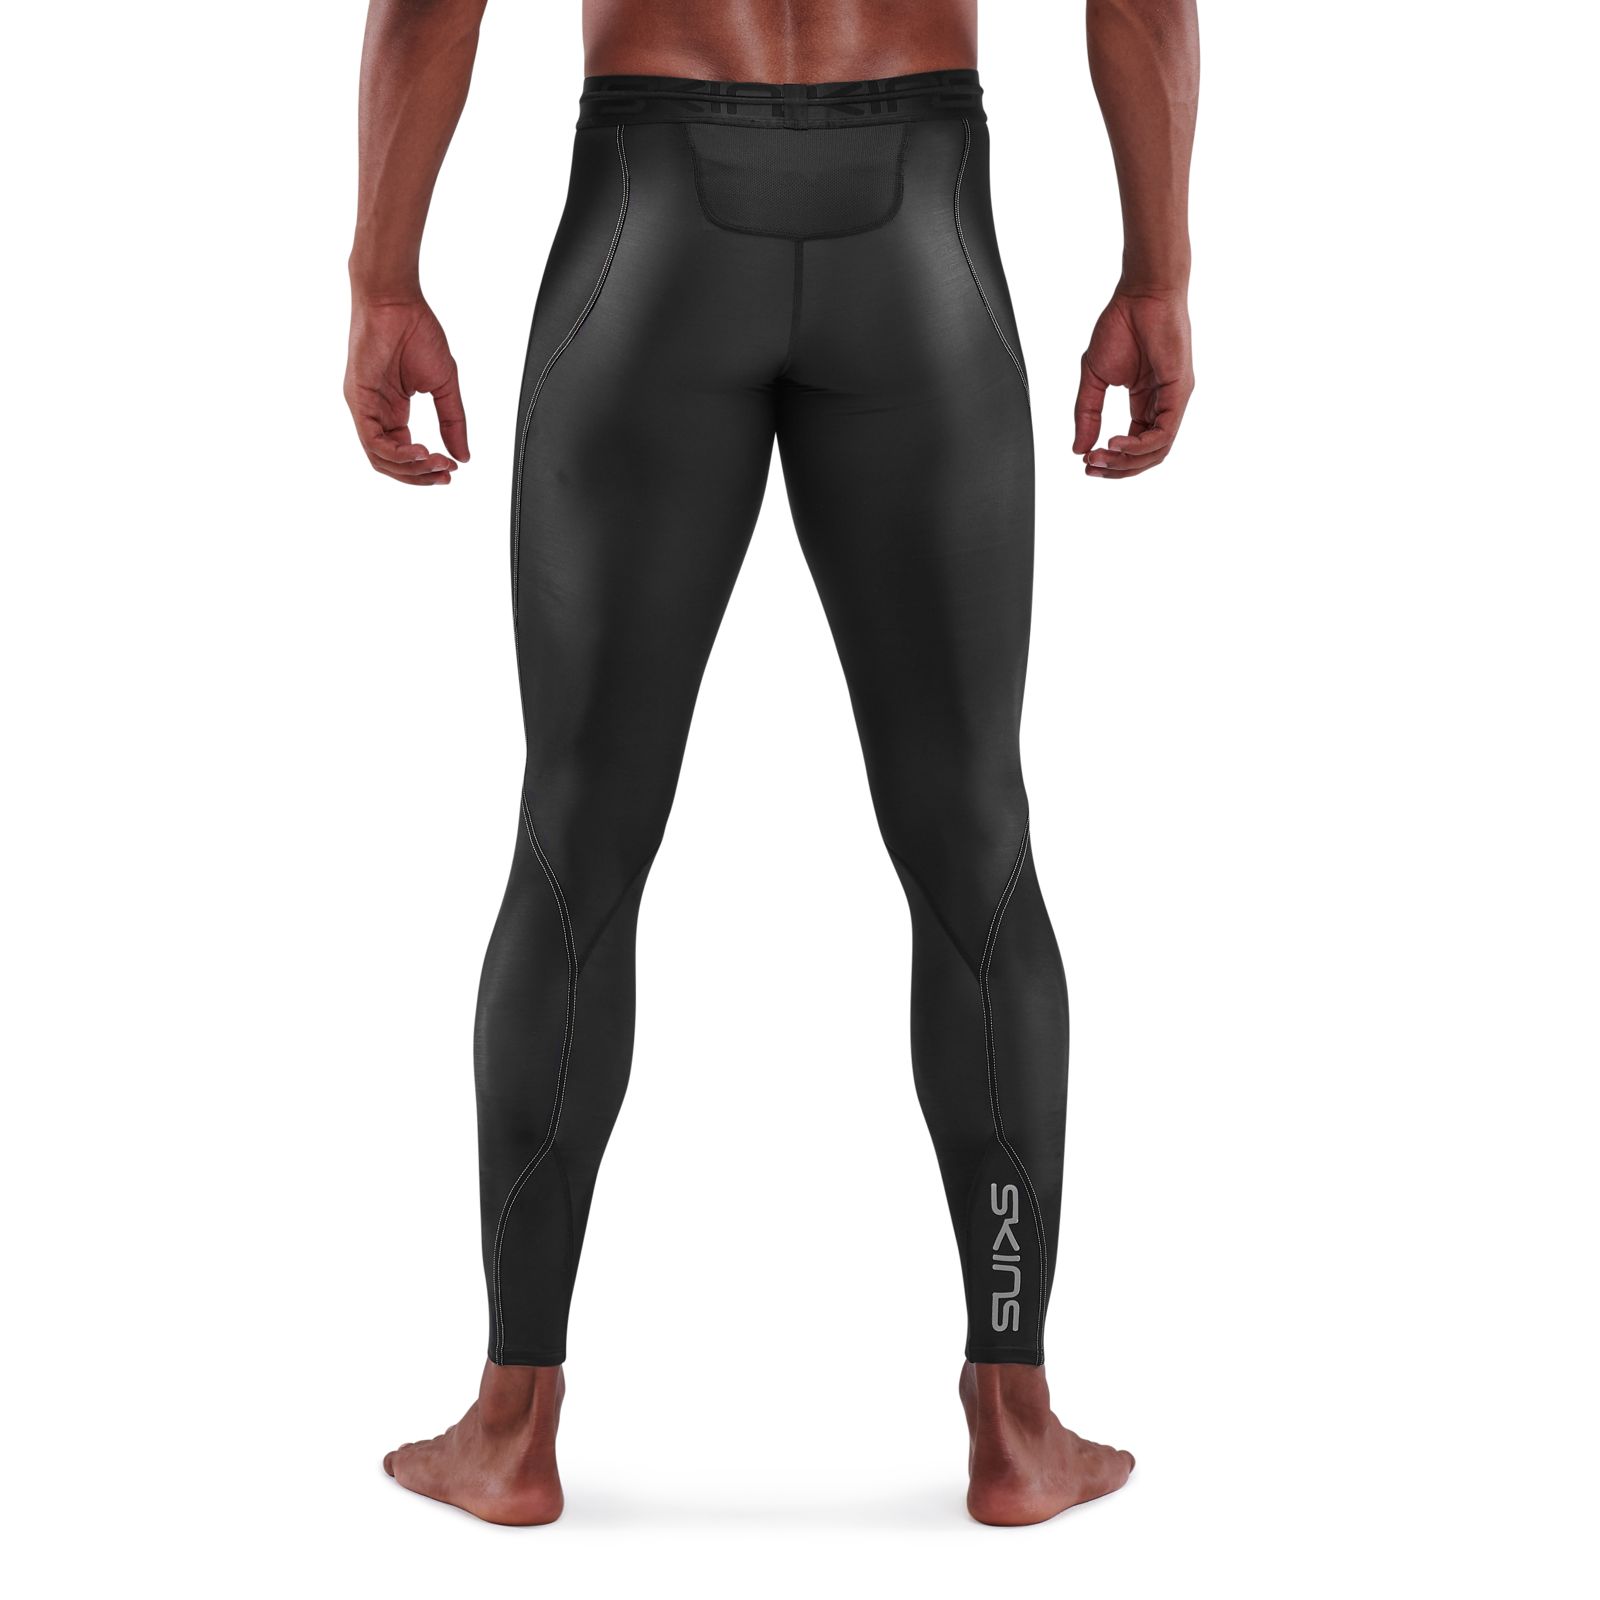 Mens 3/4 Black Compression Gym Legging Skins Exercise Leggings Running  Pants M L